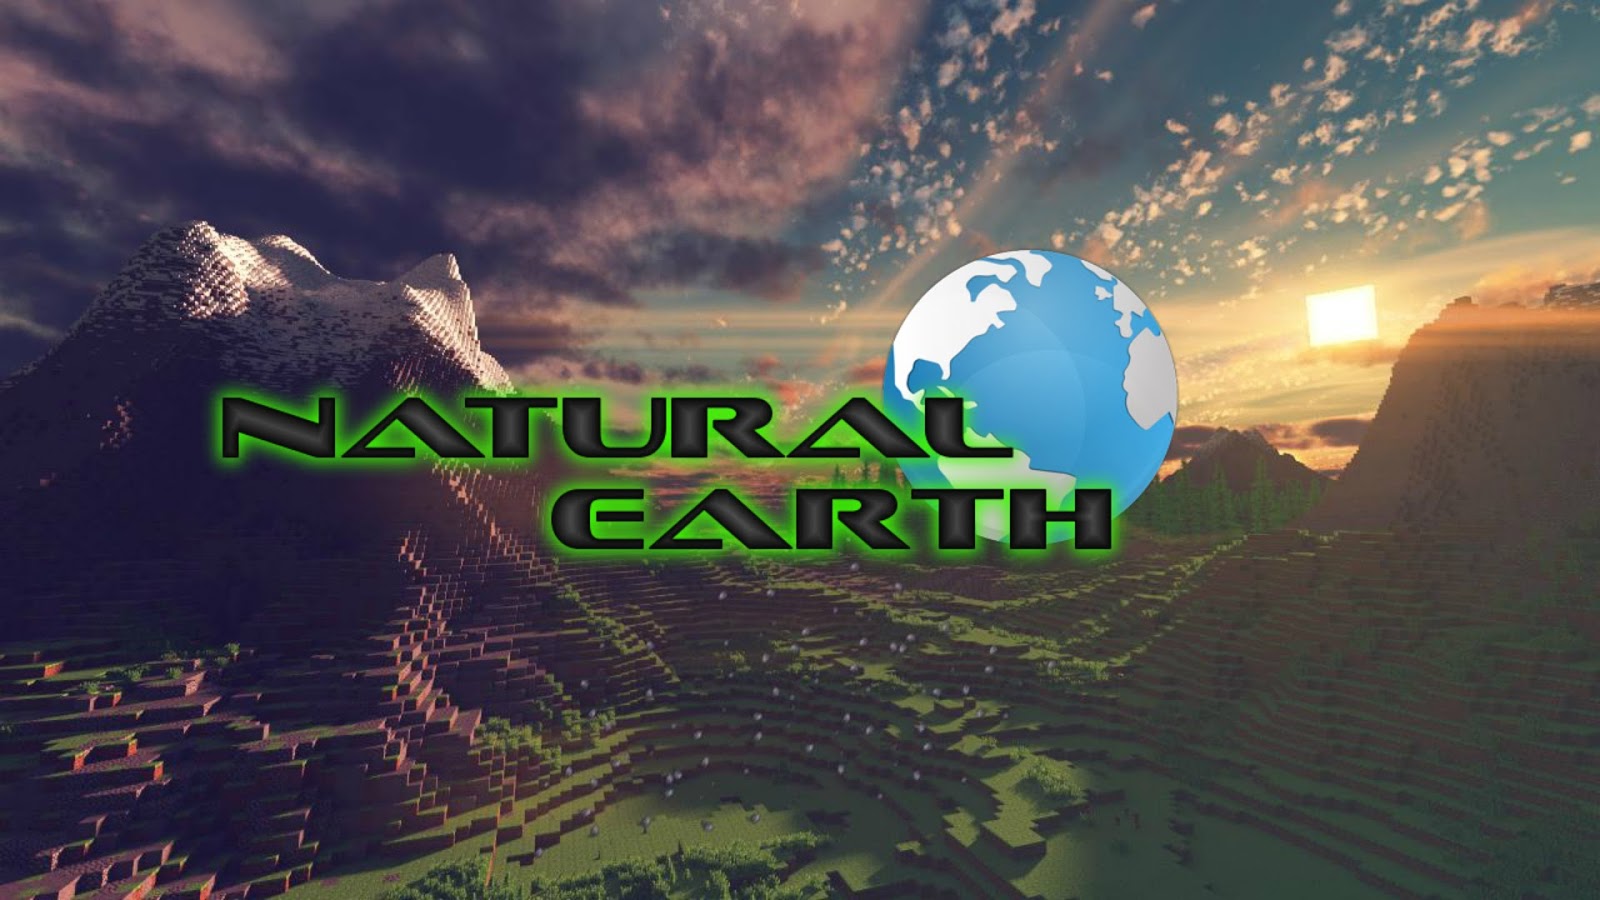 Naturalearthdata. Natural Earth. Natural data